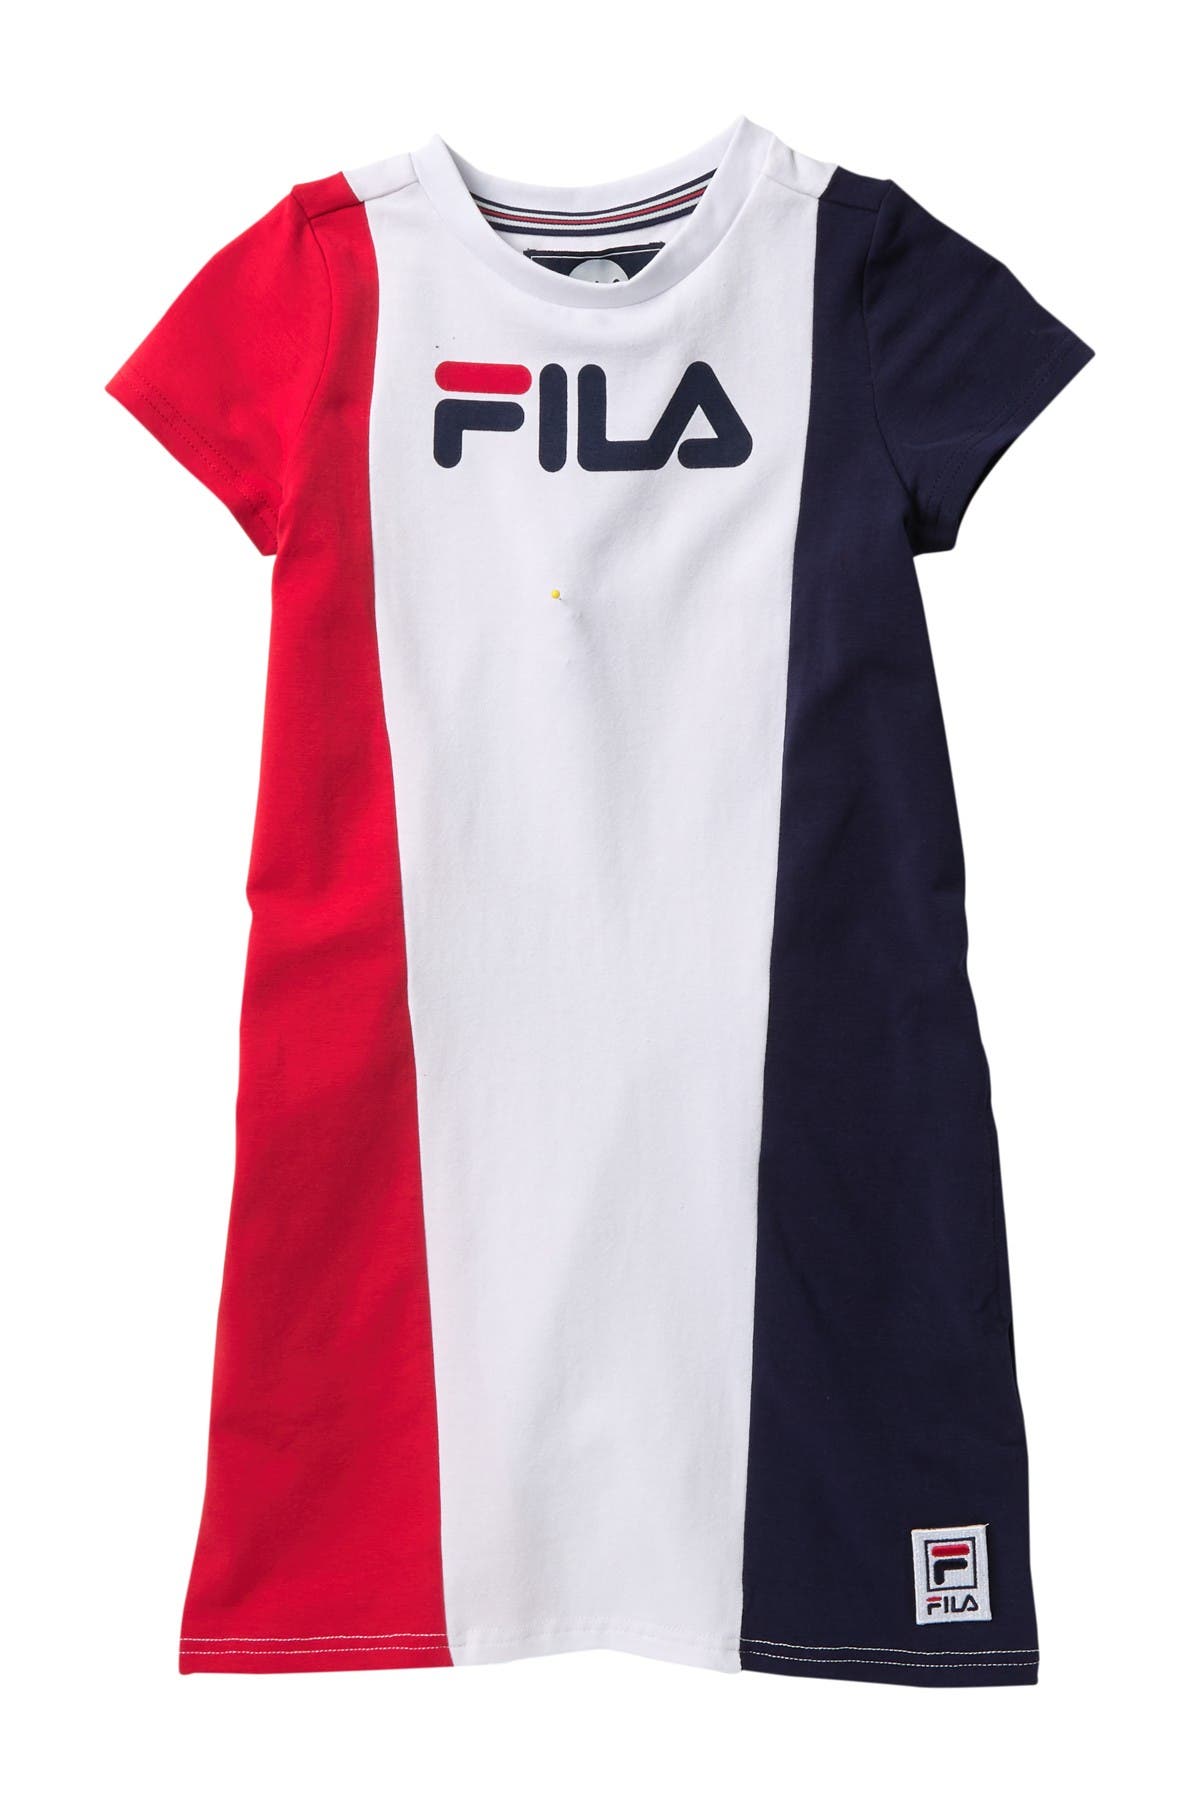 FILA USA | Vertical Tee Shirt Dress 